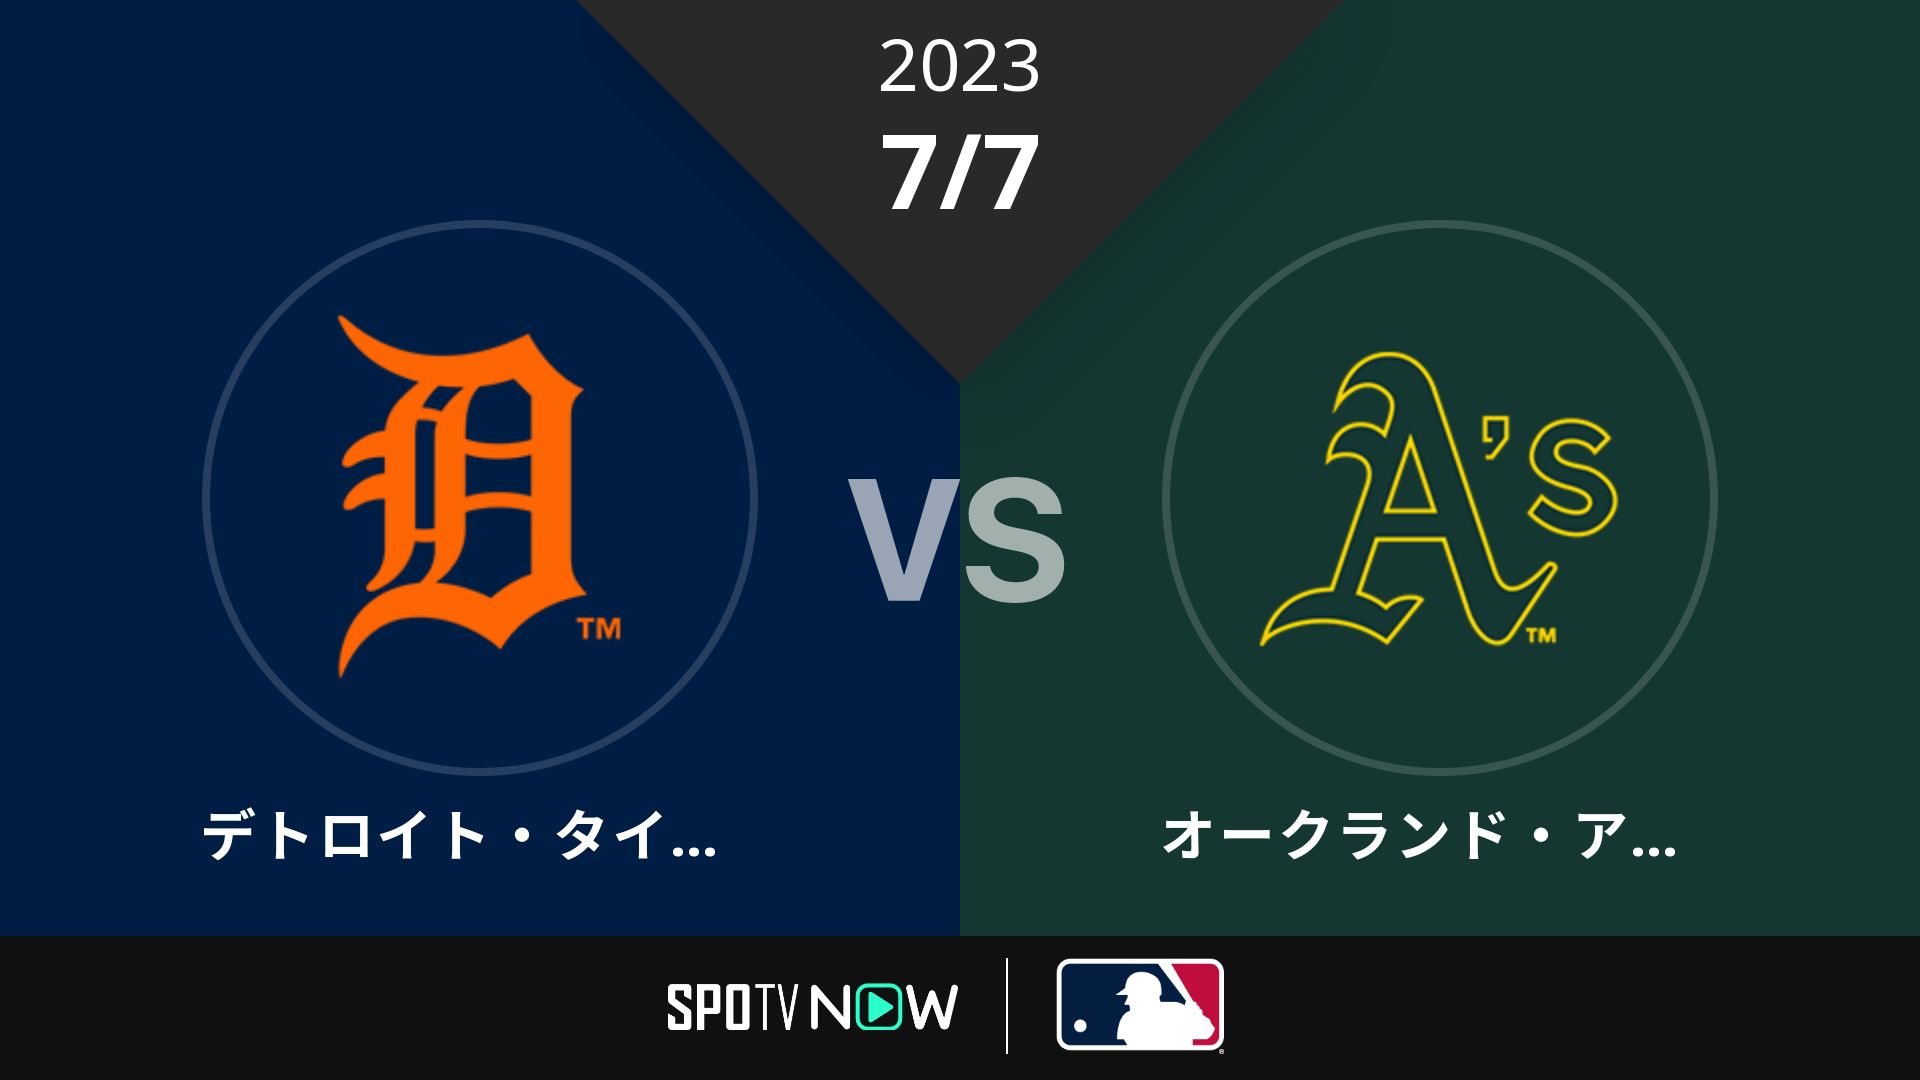 2023/7/7 タイガース vs アスレチックス [MLB]